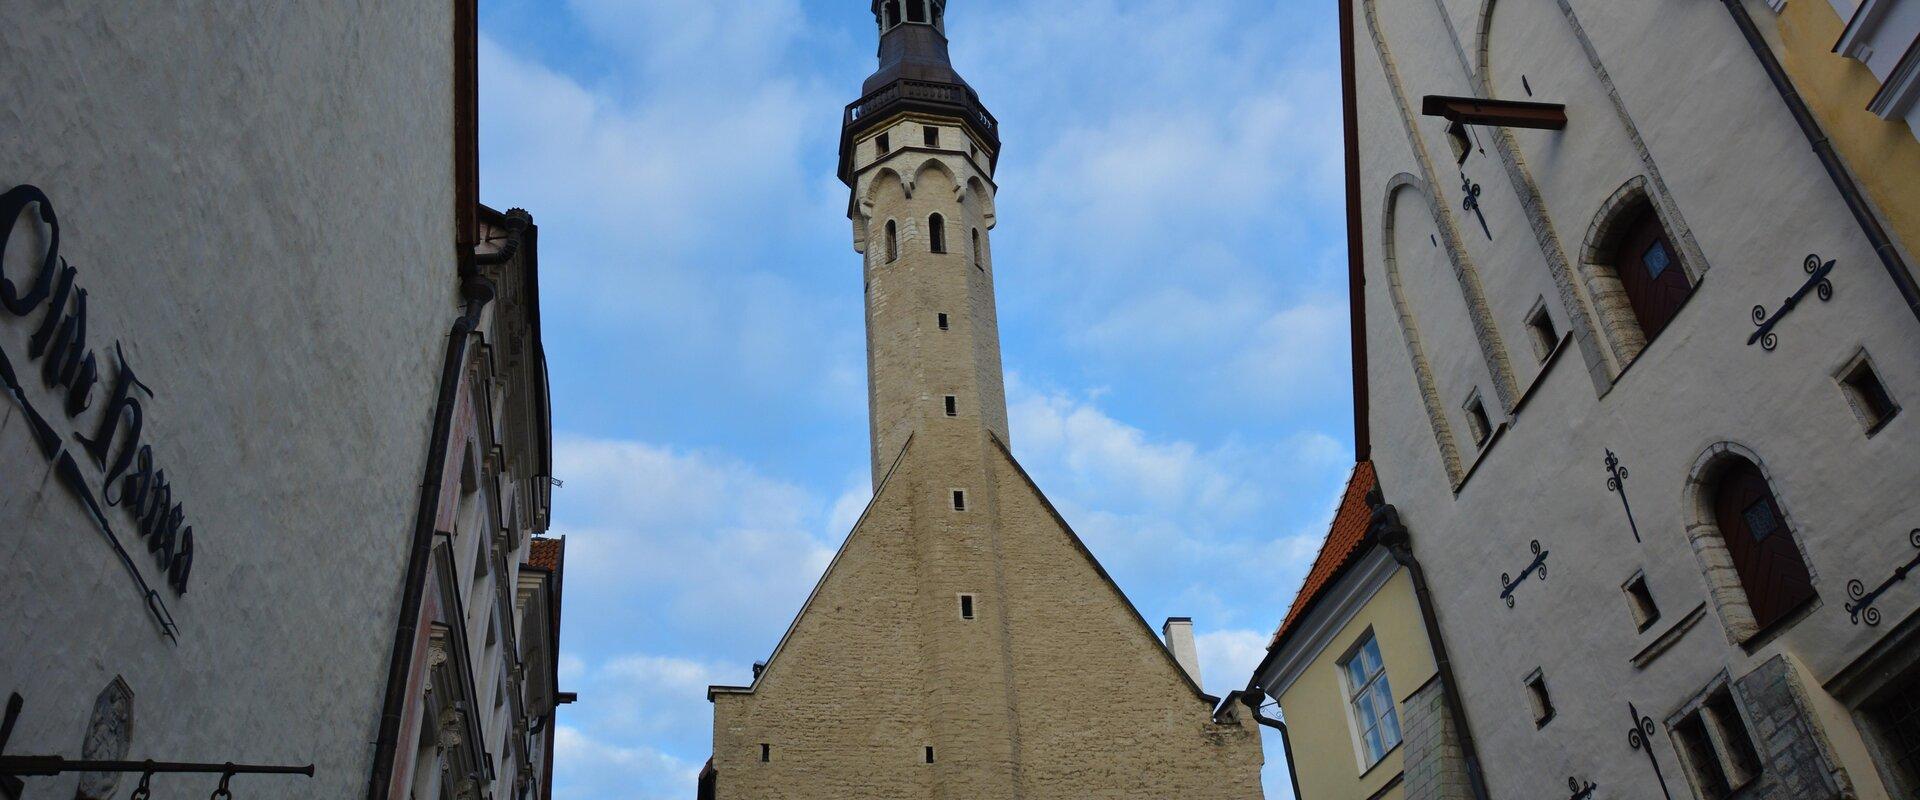 Tallinna Raekoja torn